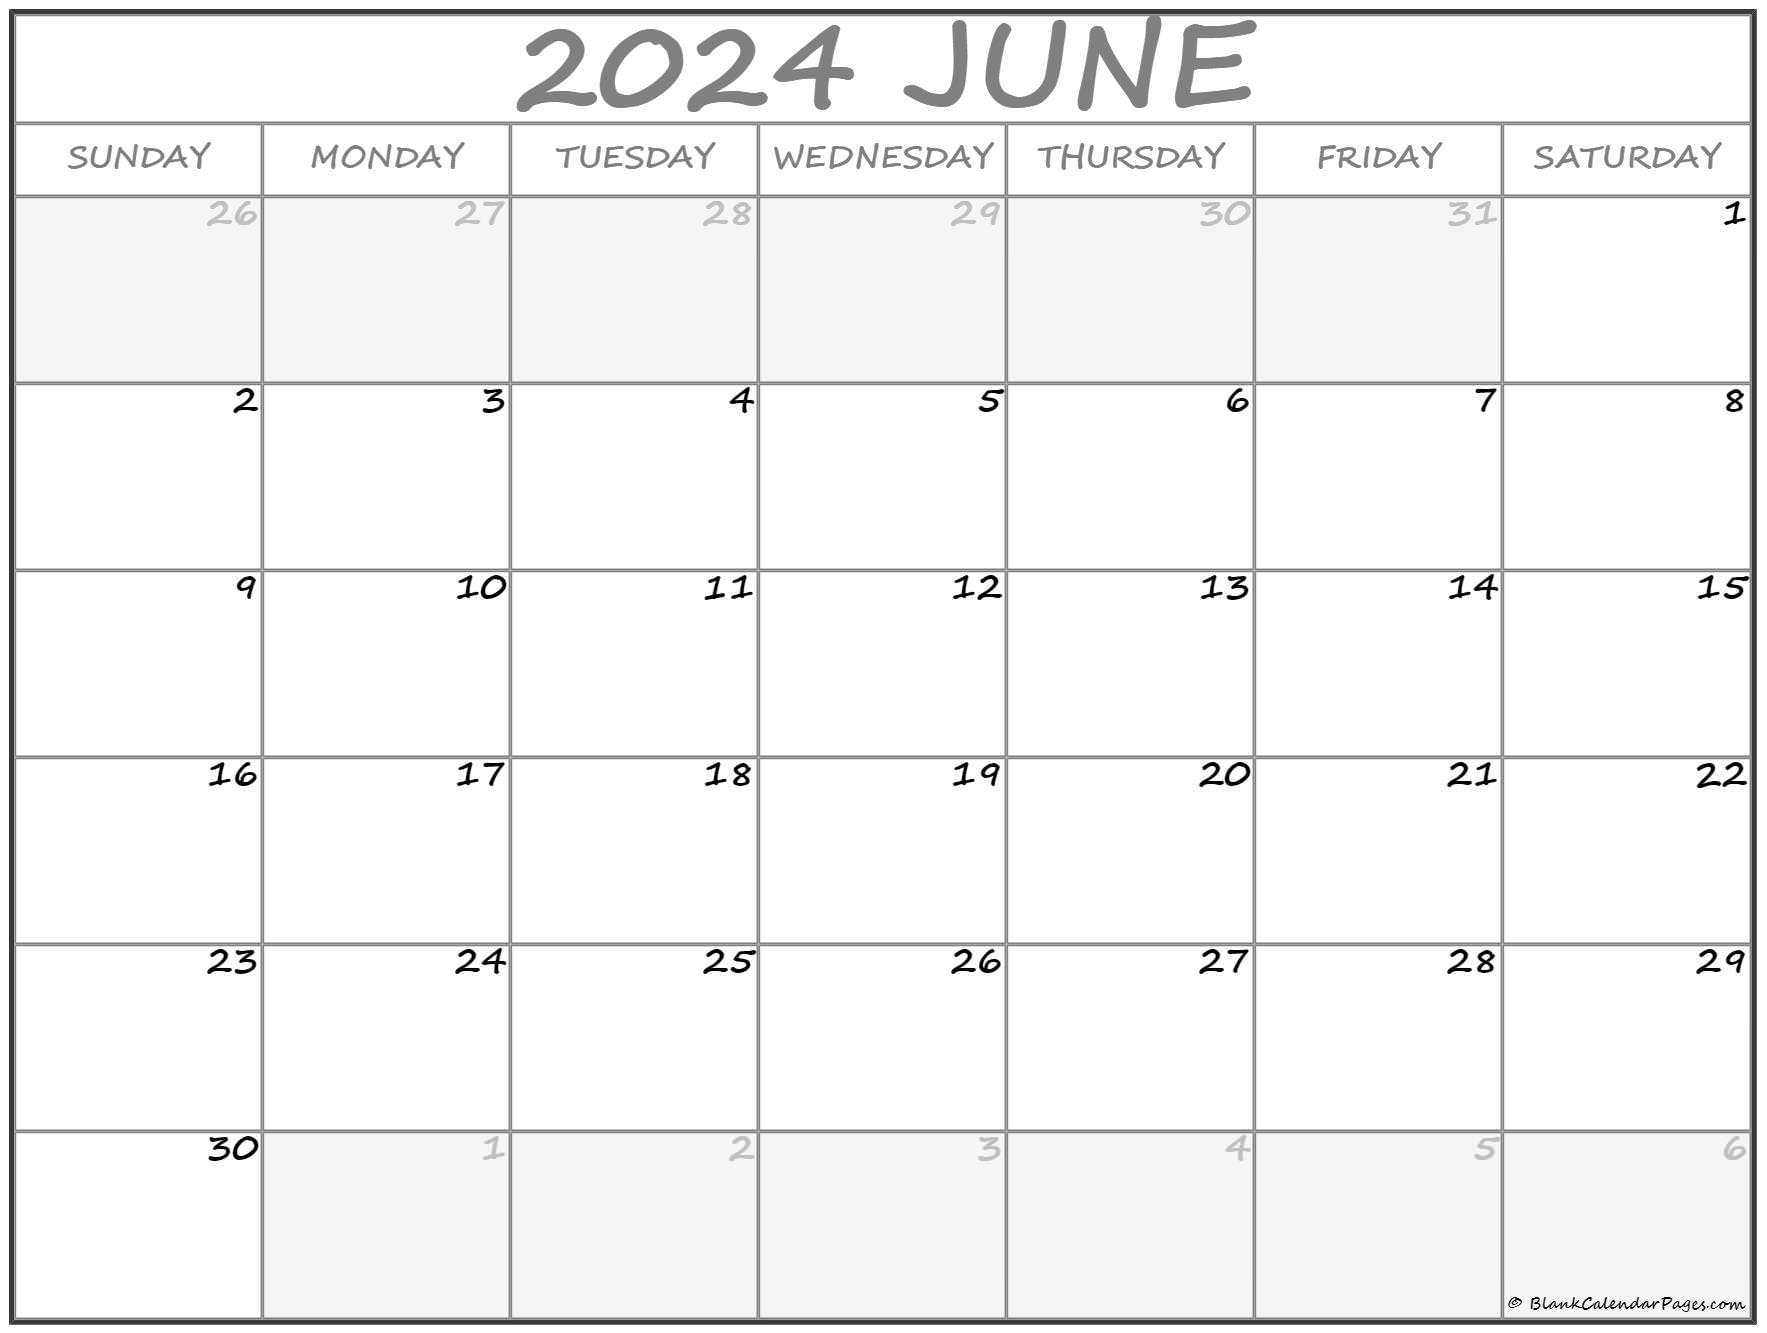 Погода на июнь 2024 г. Календарь 2024. Страницы календаря на 2024 году. Американский календарь 2024. Календарь 2024 картинки.